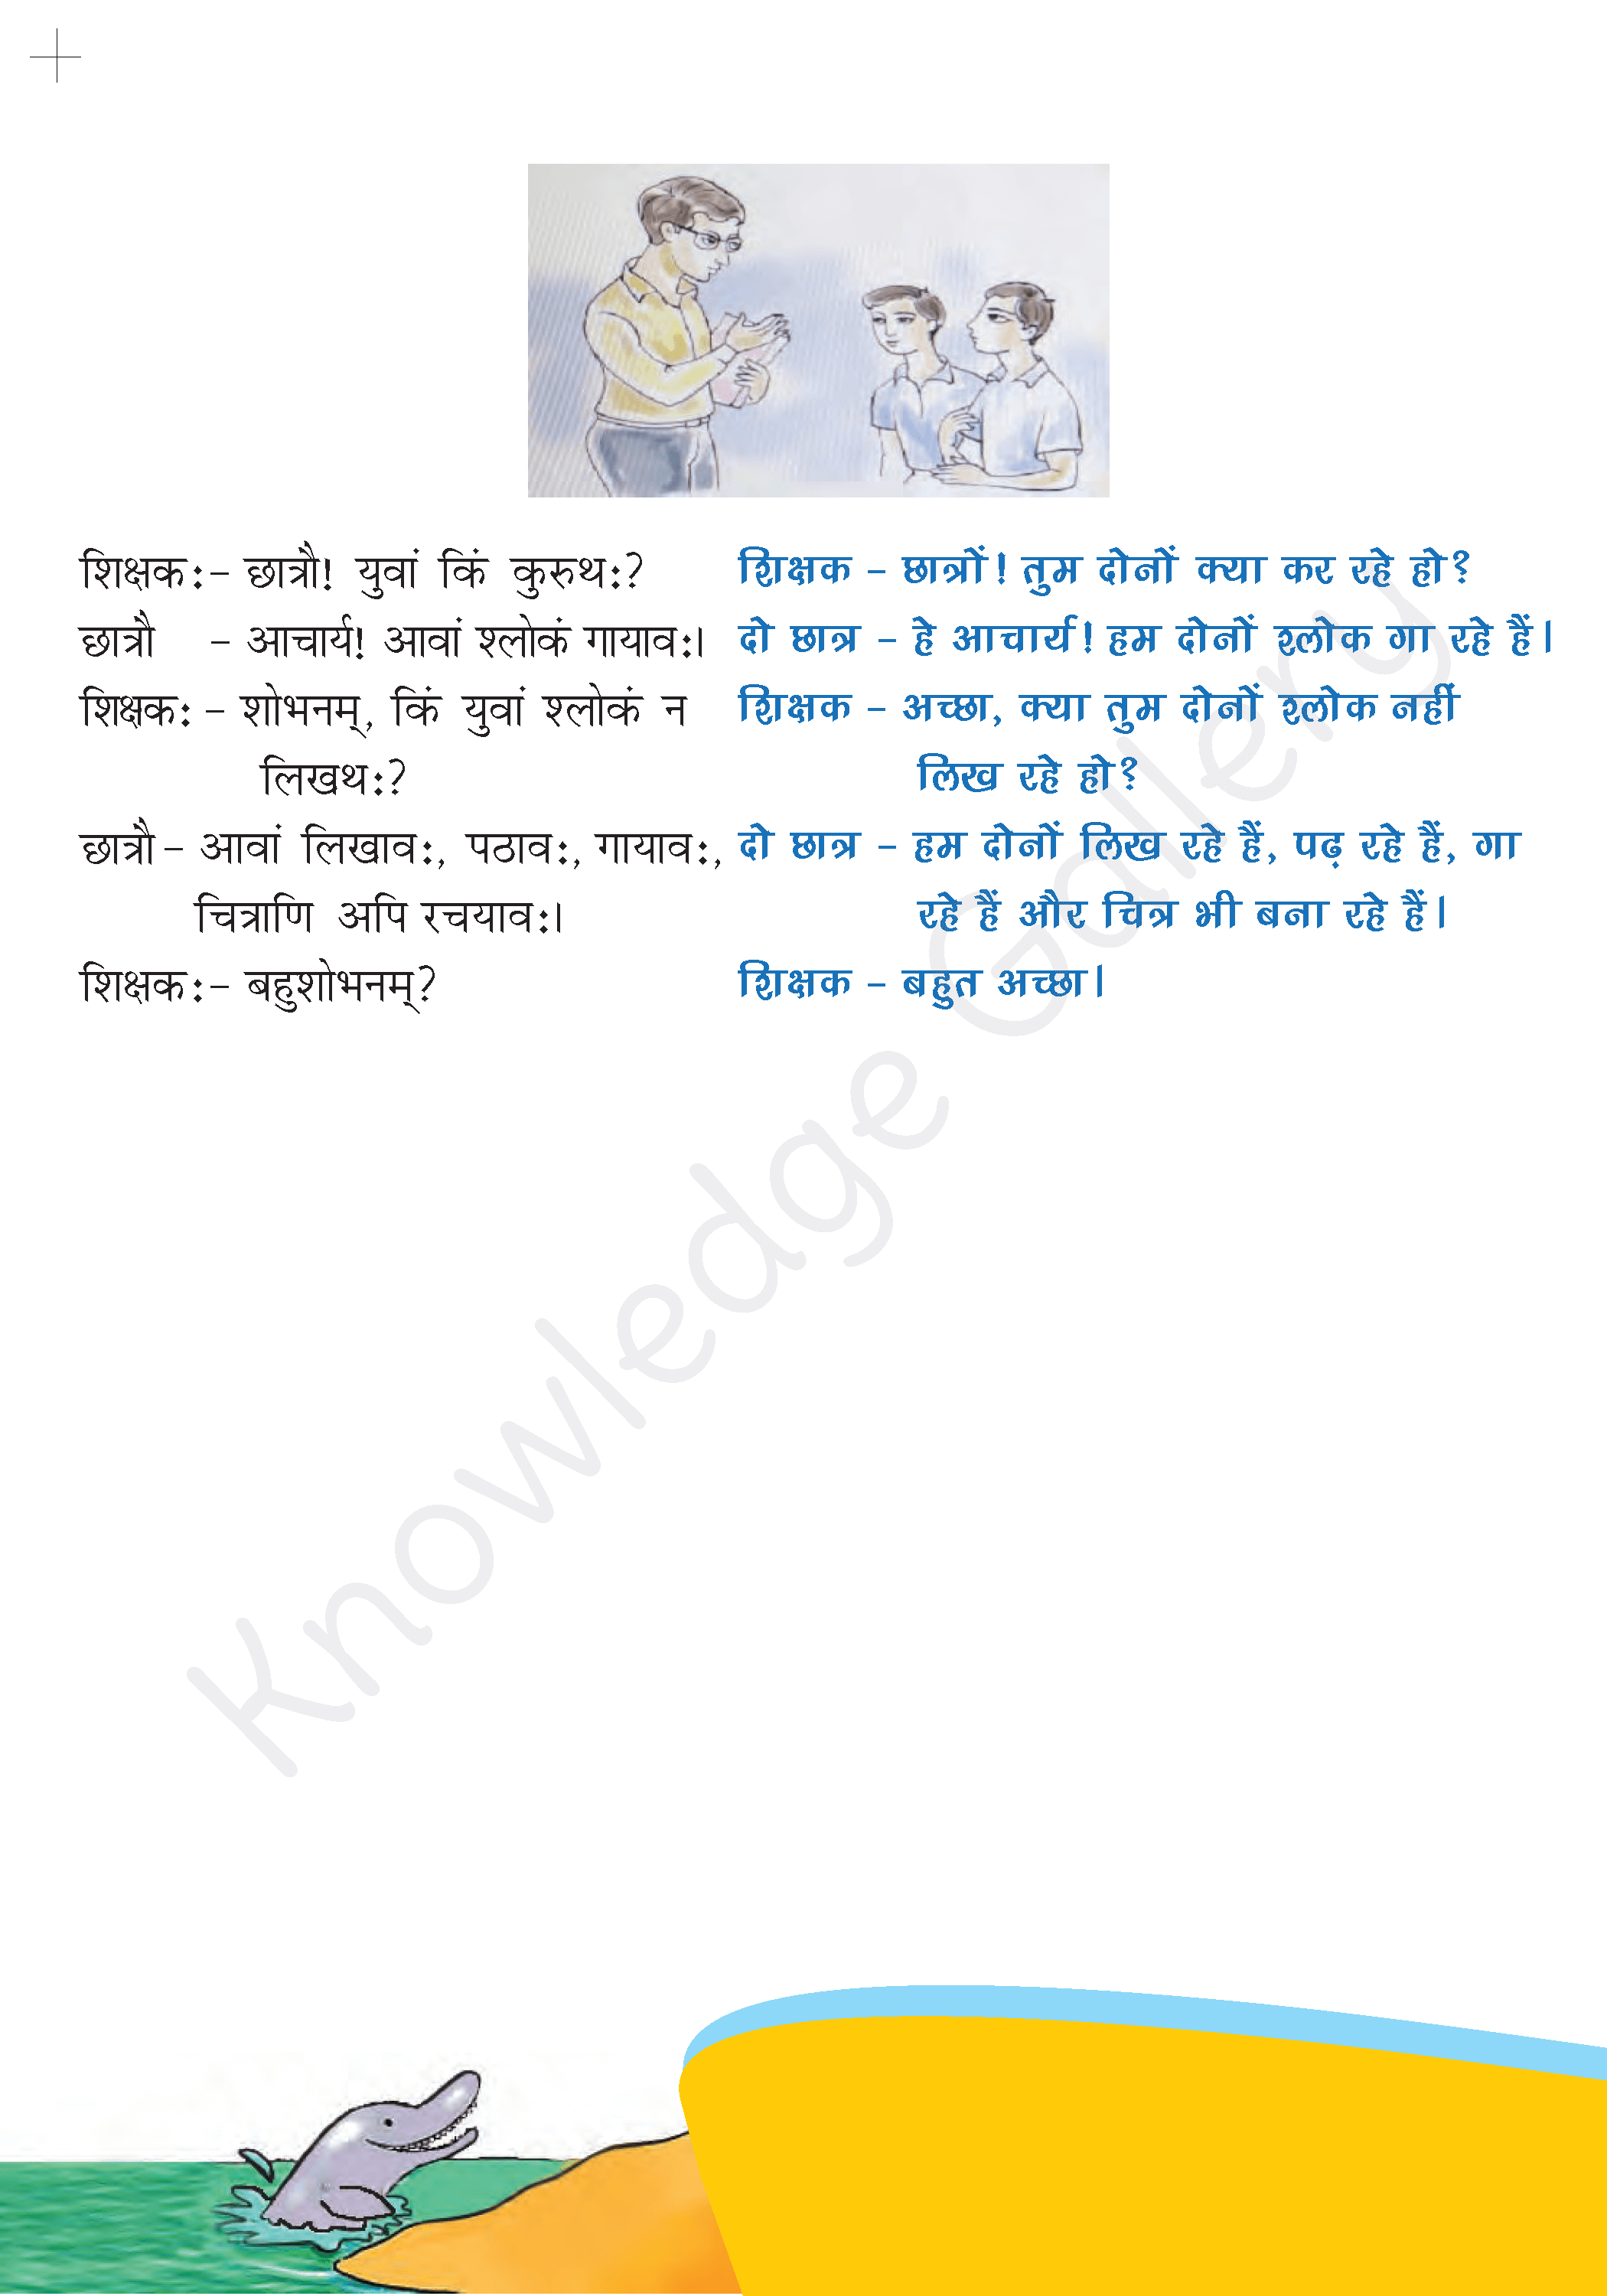 NCERT Solution For Class 6 Sanskrit Chapter 4 part 3